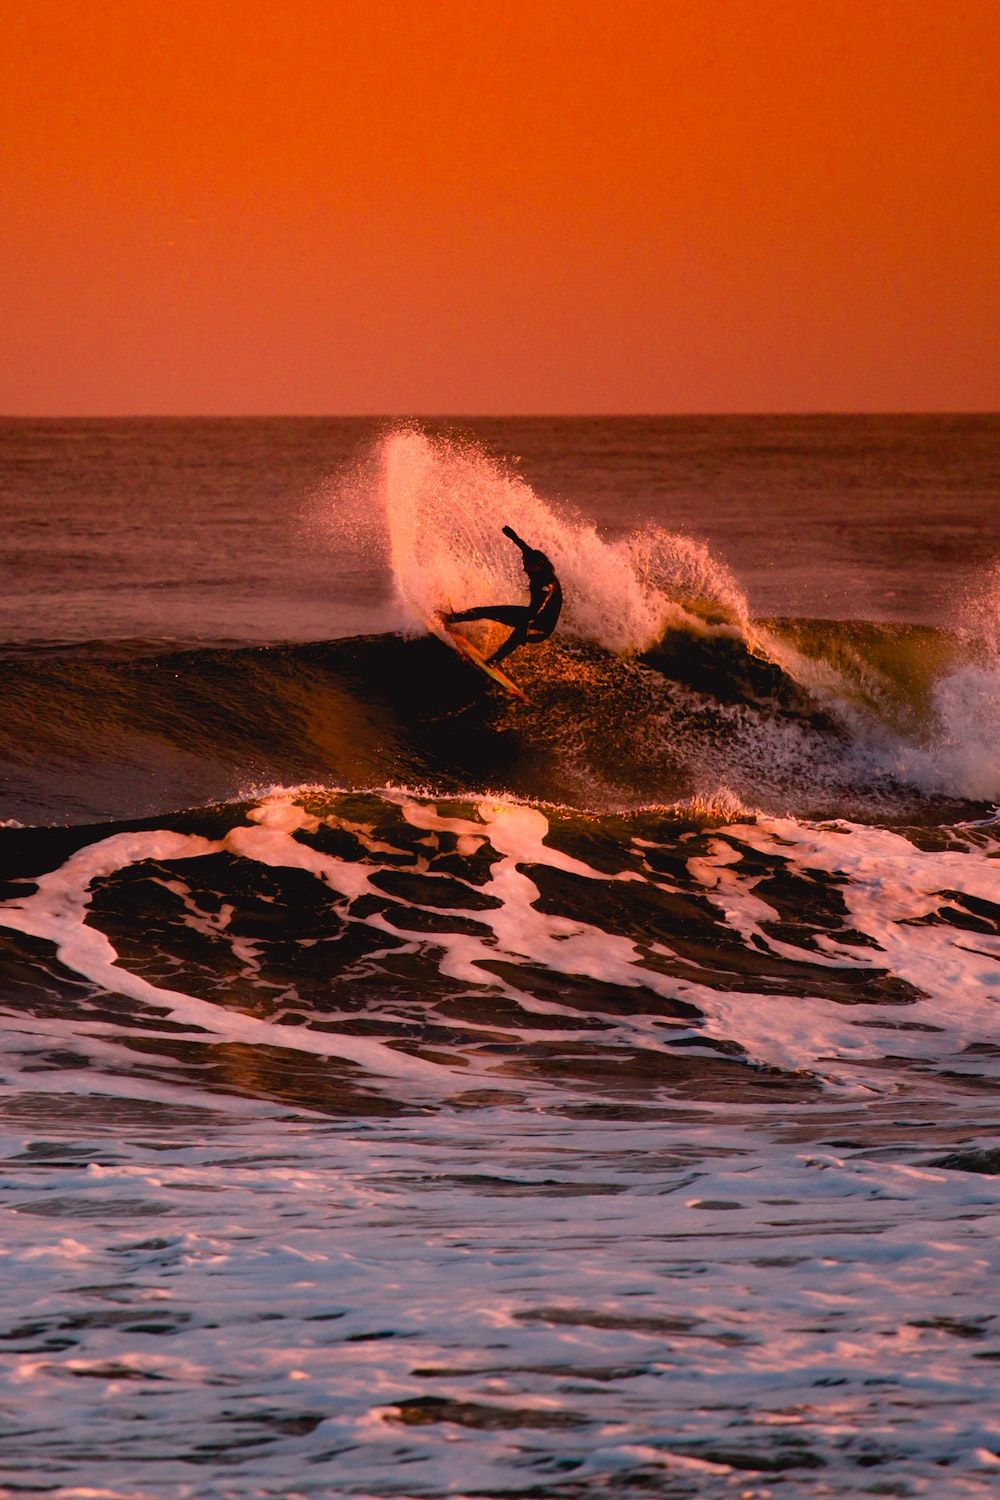  Surfen Hintergrundbild 1000x1500. Surf Picture. Download Free Image